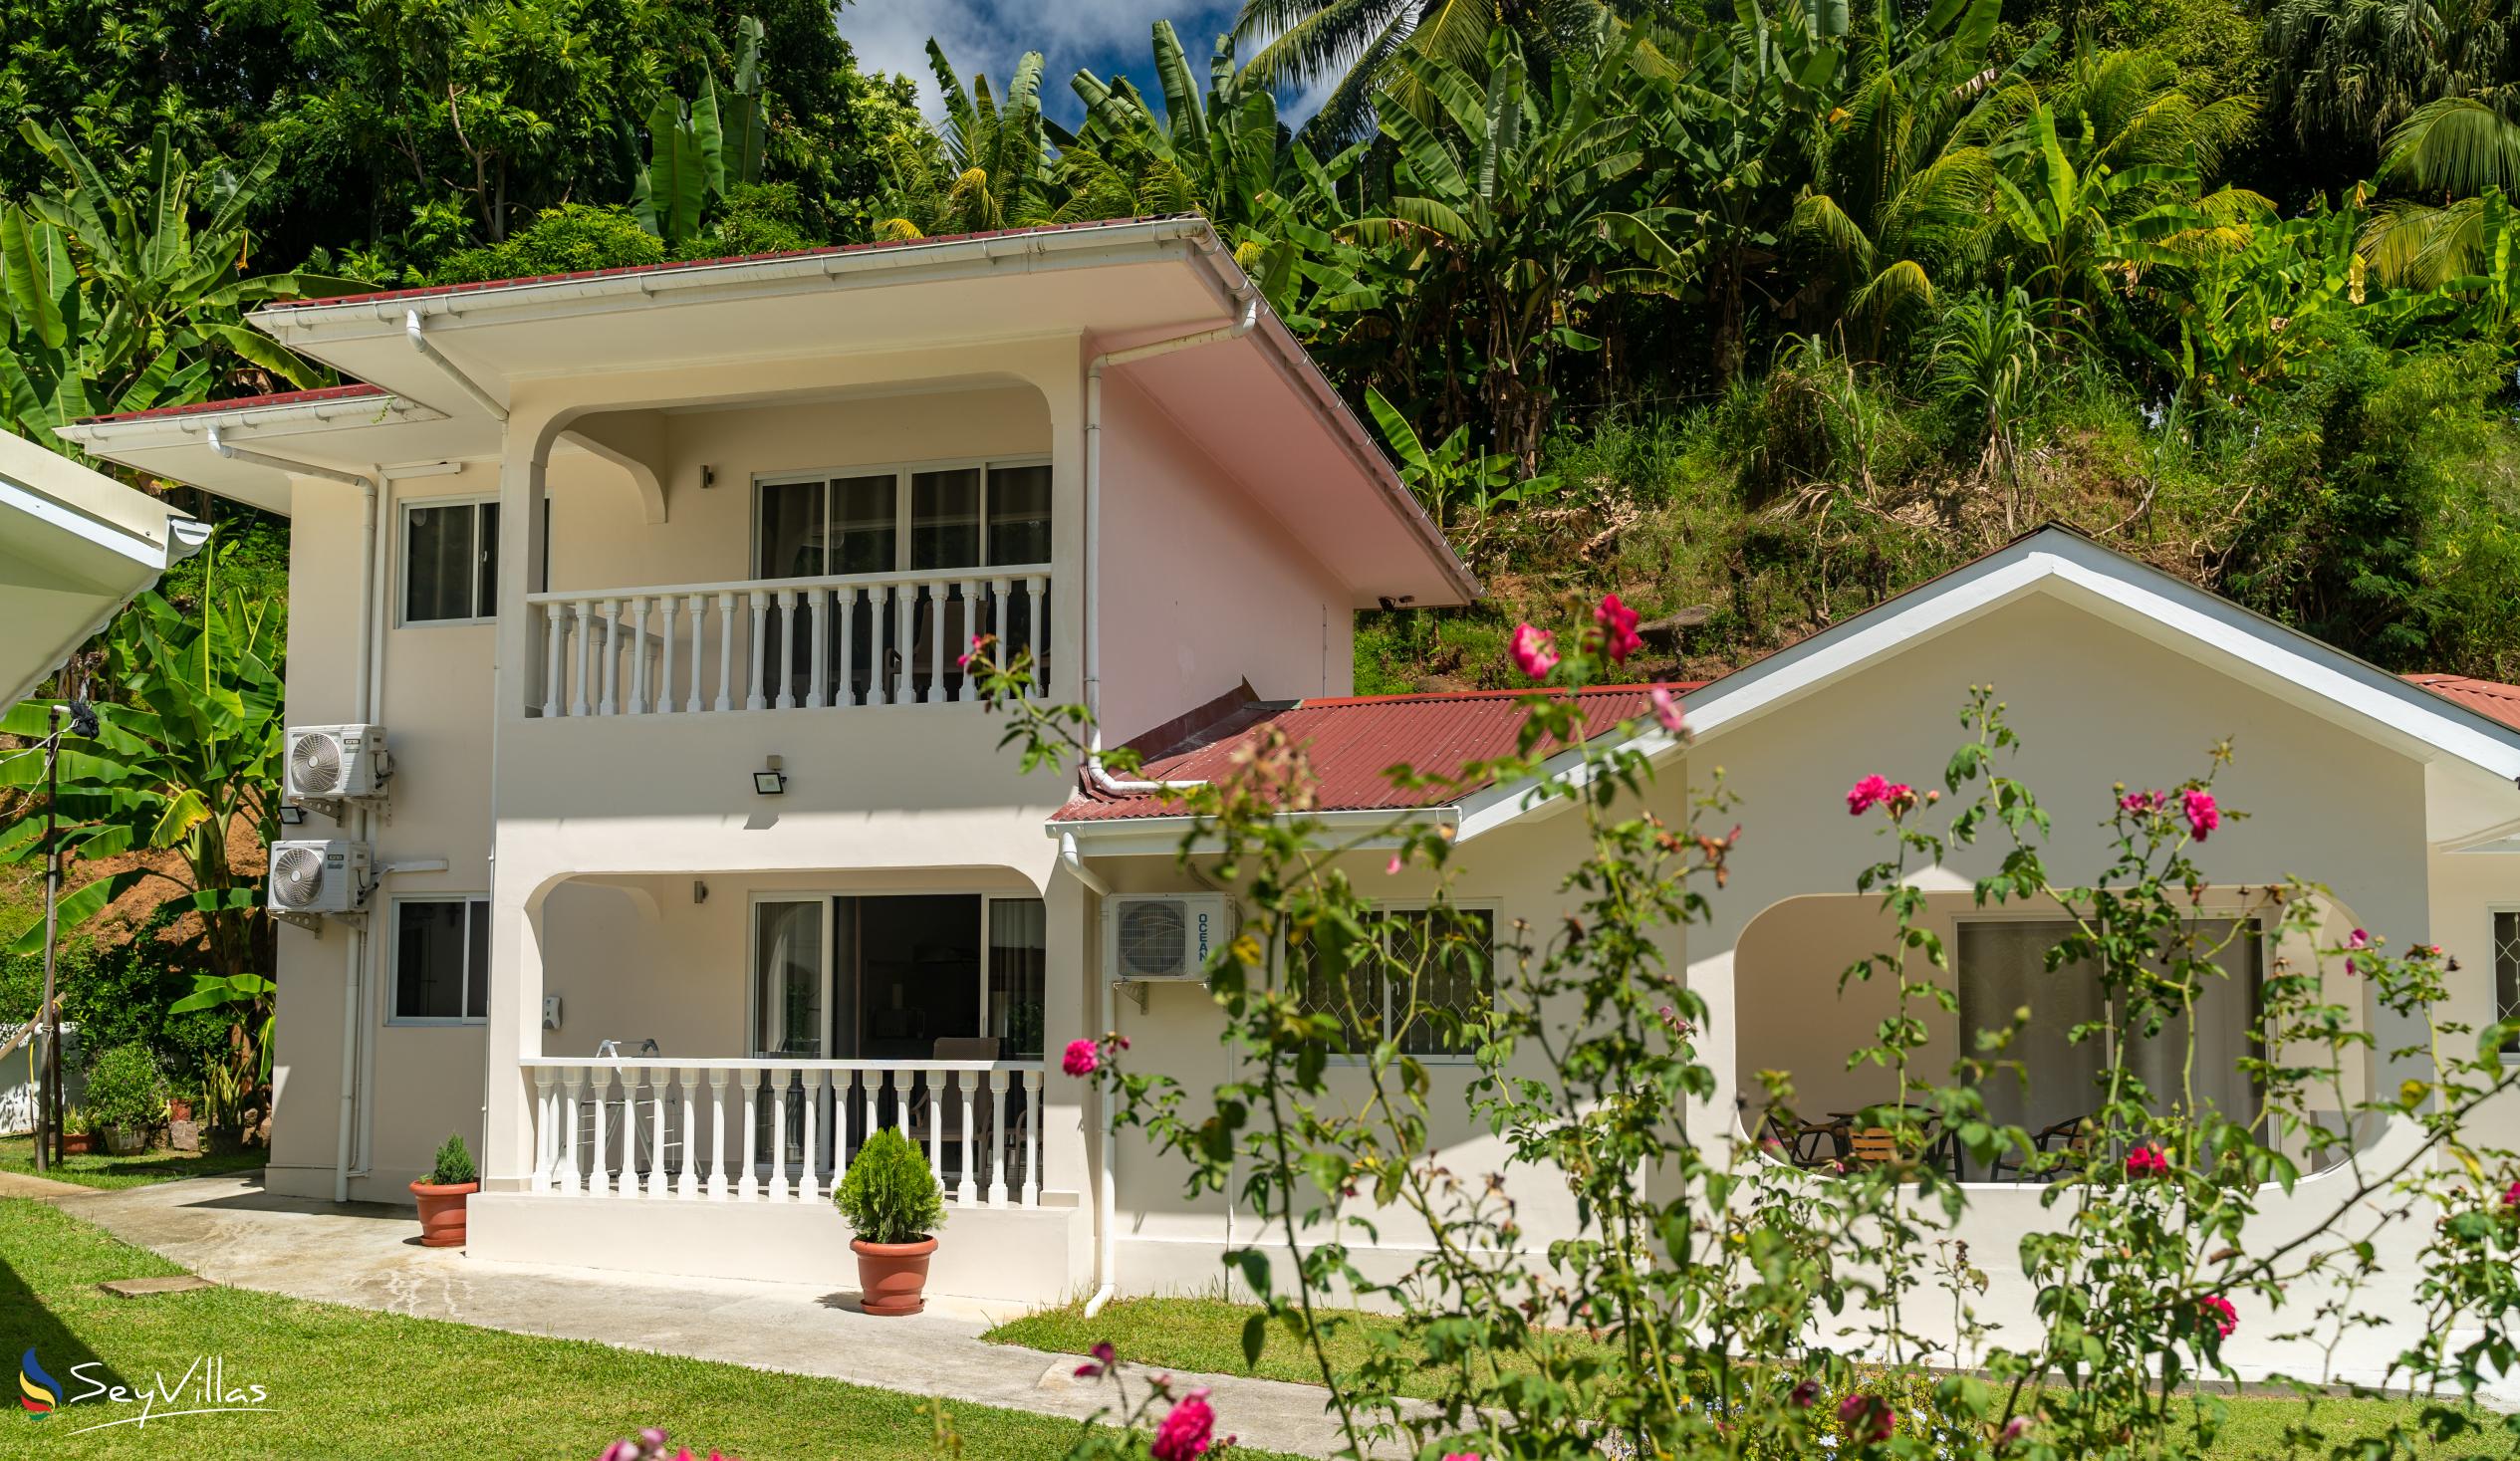 Photo 1: Paul's Residence - Outdoor area - Mahé (Seychelles)